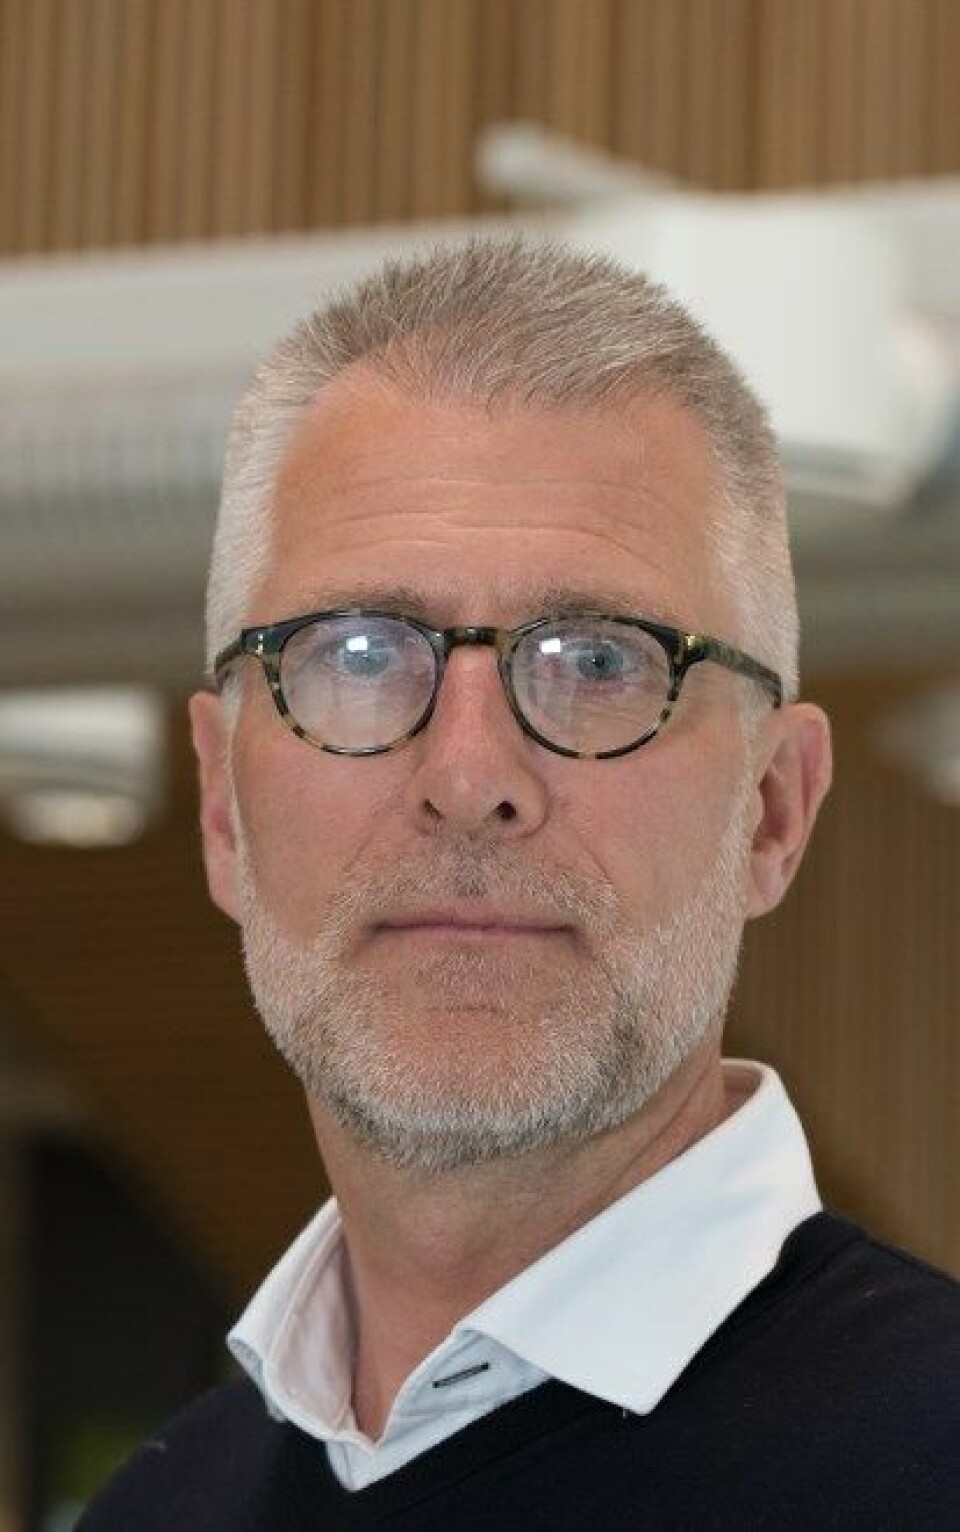 MØT ALLE PASIENTENE: Forsker Per Arne Holman mener pasientene bør undersøkes før man beslutter at behandling ikke er nødvendig.

            
                Foto: Arkivfoto